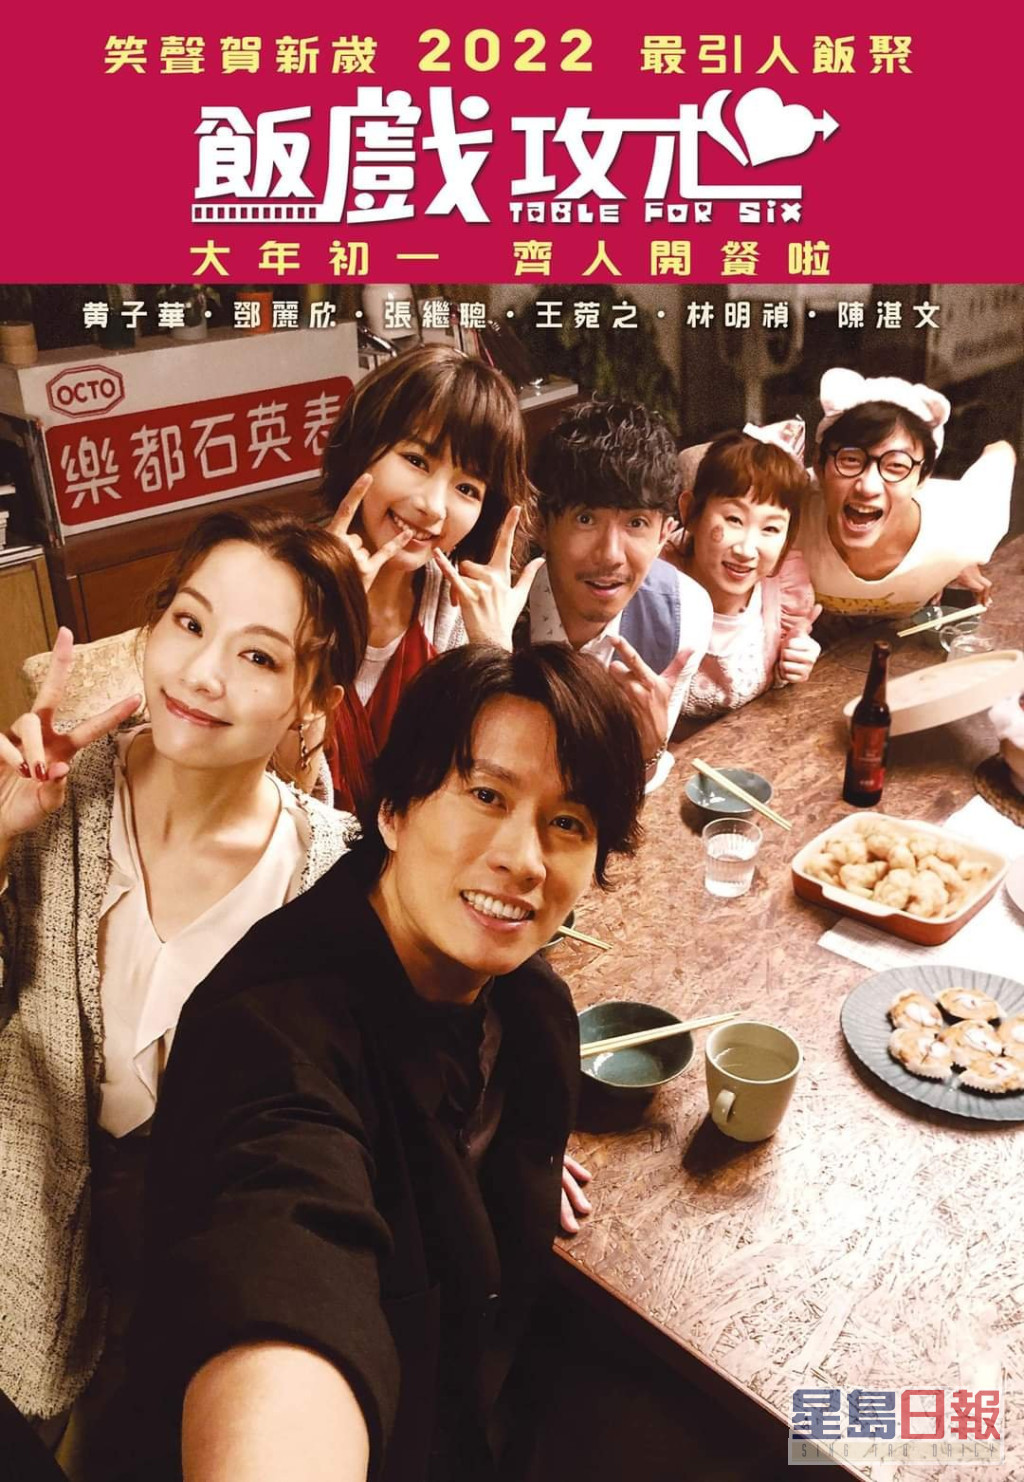 陳詠燊執導的《飯戲攻心》將於明年大年初一上映。